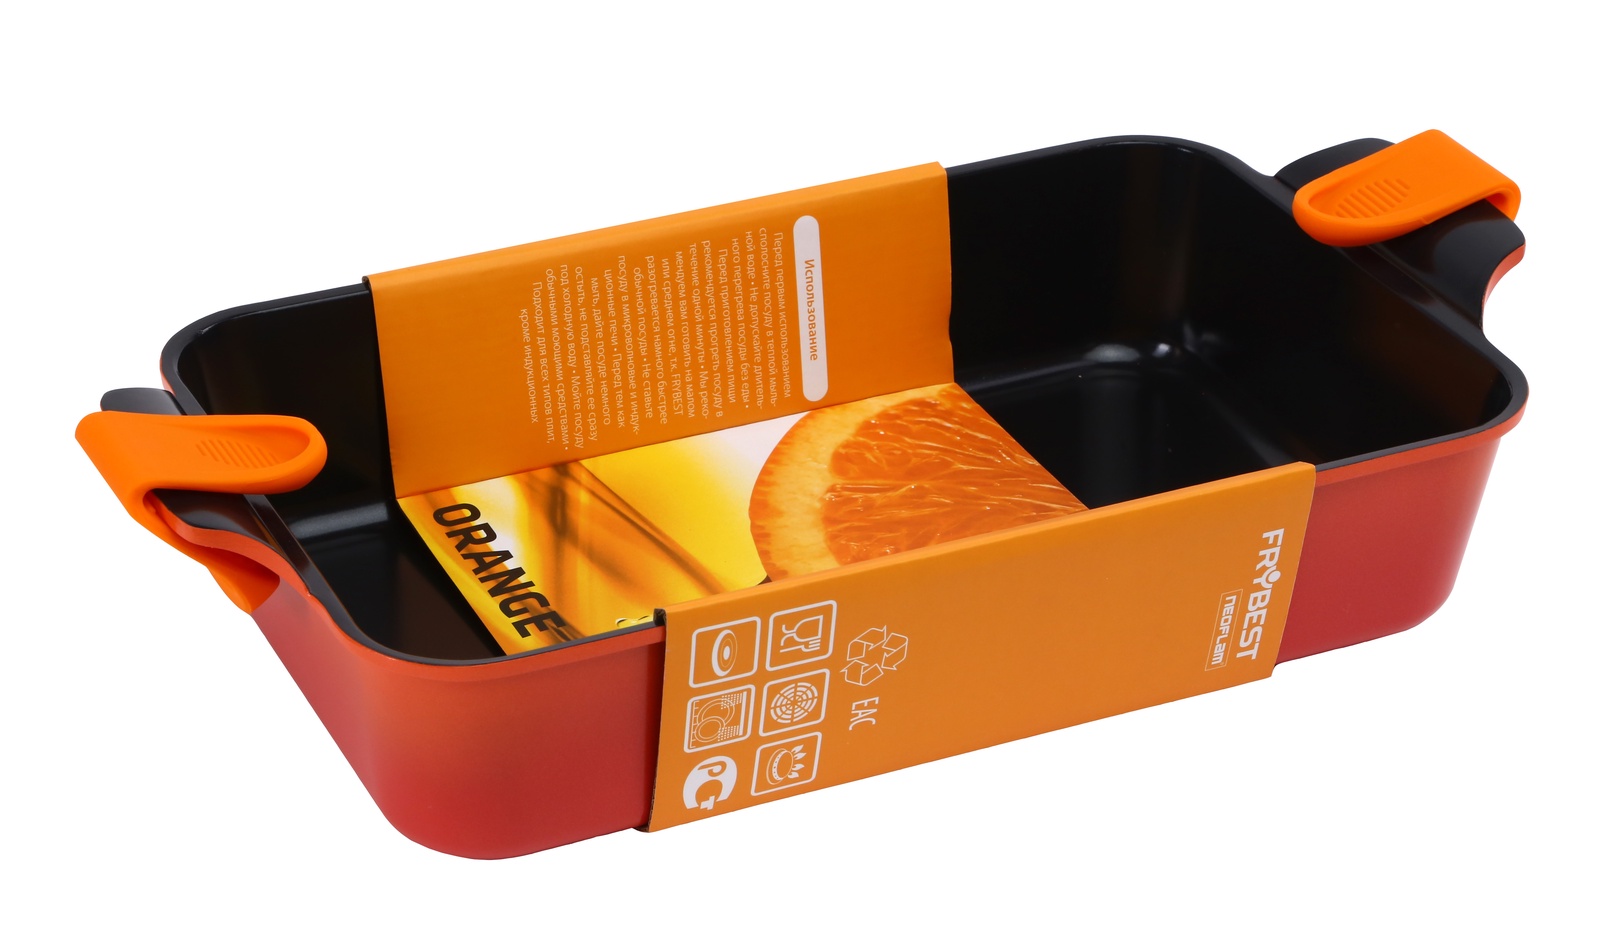 фото Форма для запекания FRYBEST ORCA-4422 Orange форма 44*22 см, ORCA-4422 Orange, оранжевый